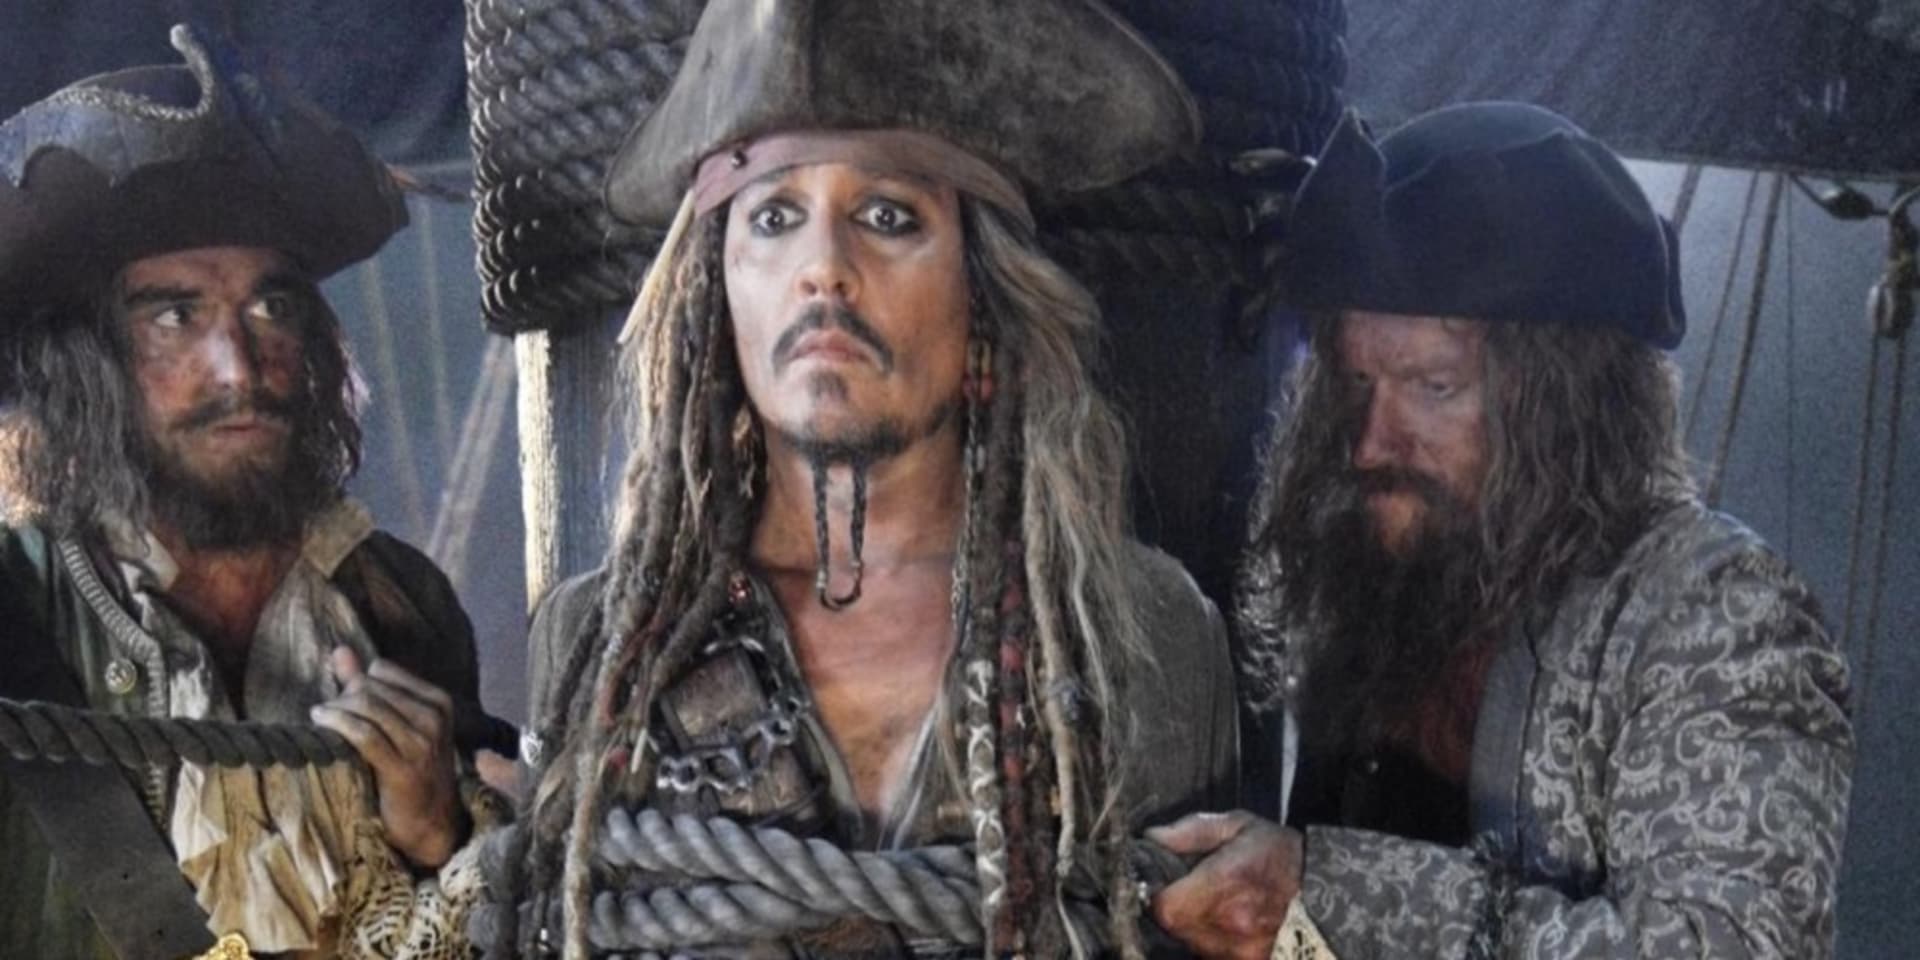 Piráti z Karibiku: Salazarova pomsta (25. května) – Pátá výprava Jacka Sparrowa, tentokrát pro Tritonův trojzubec